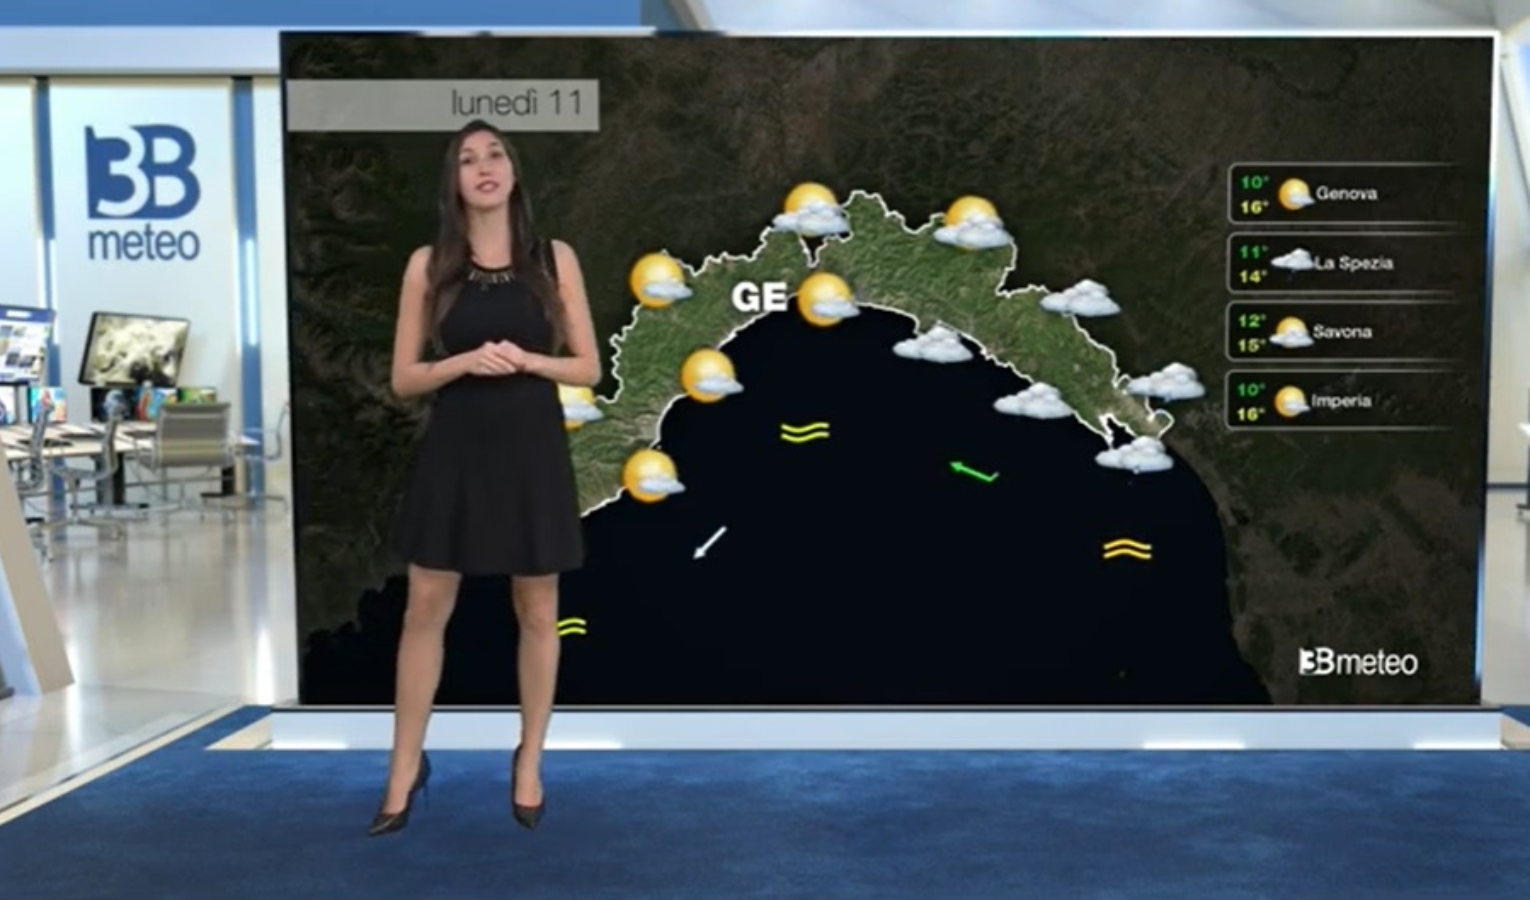 Meteo in Liguria: le previsioni per l'inizio della settimana